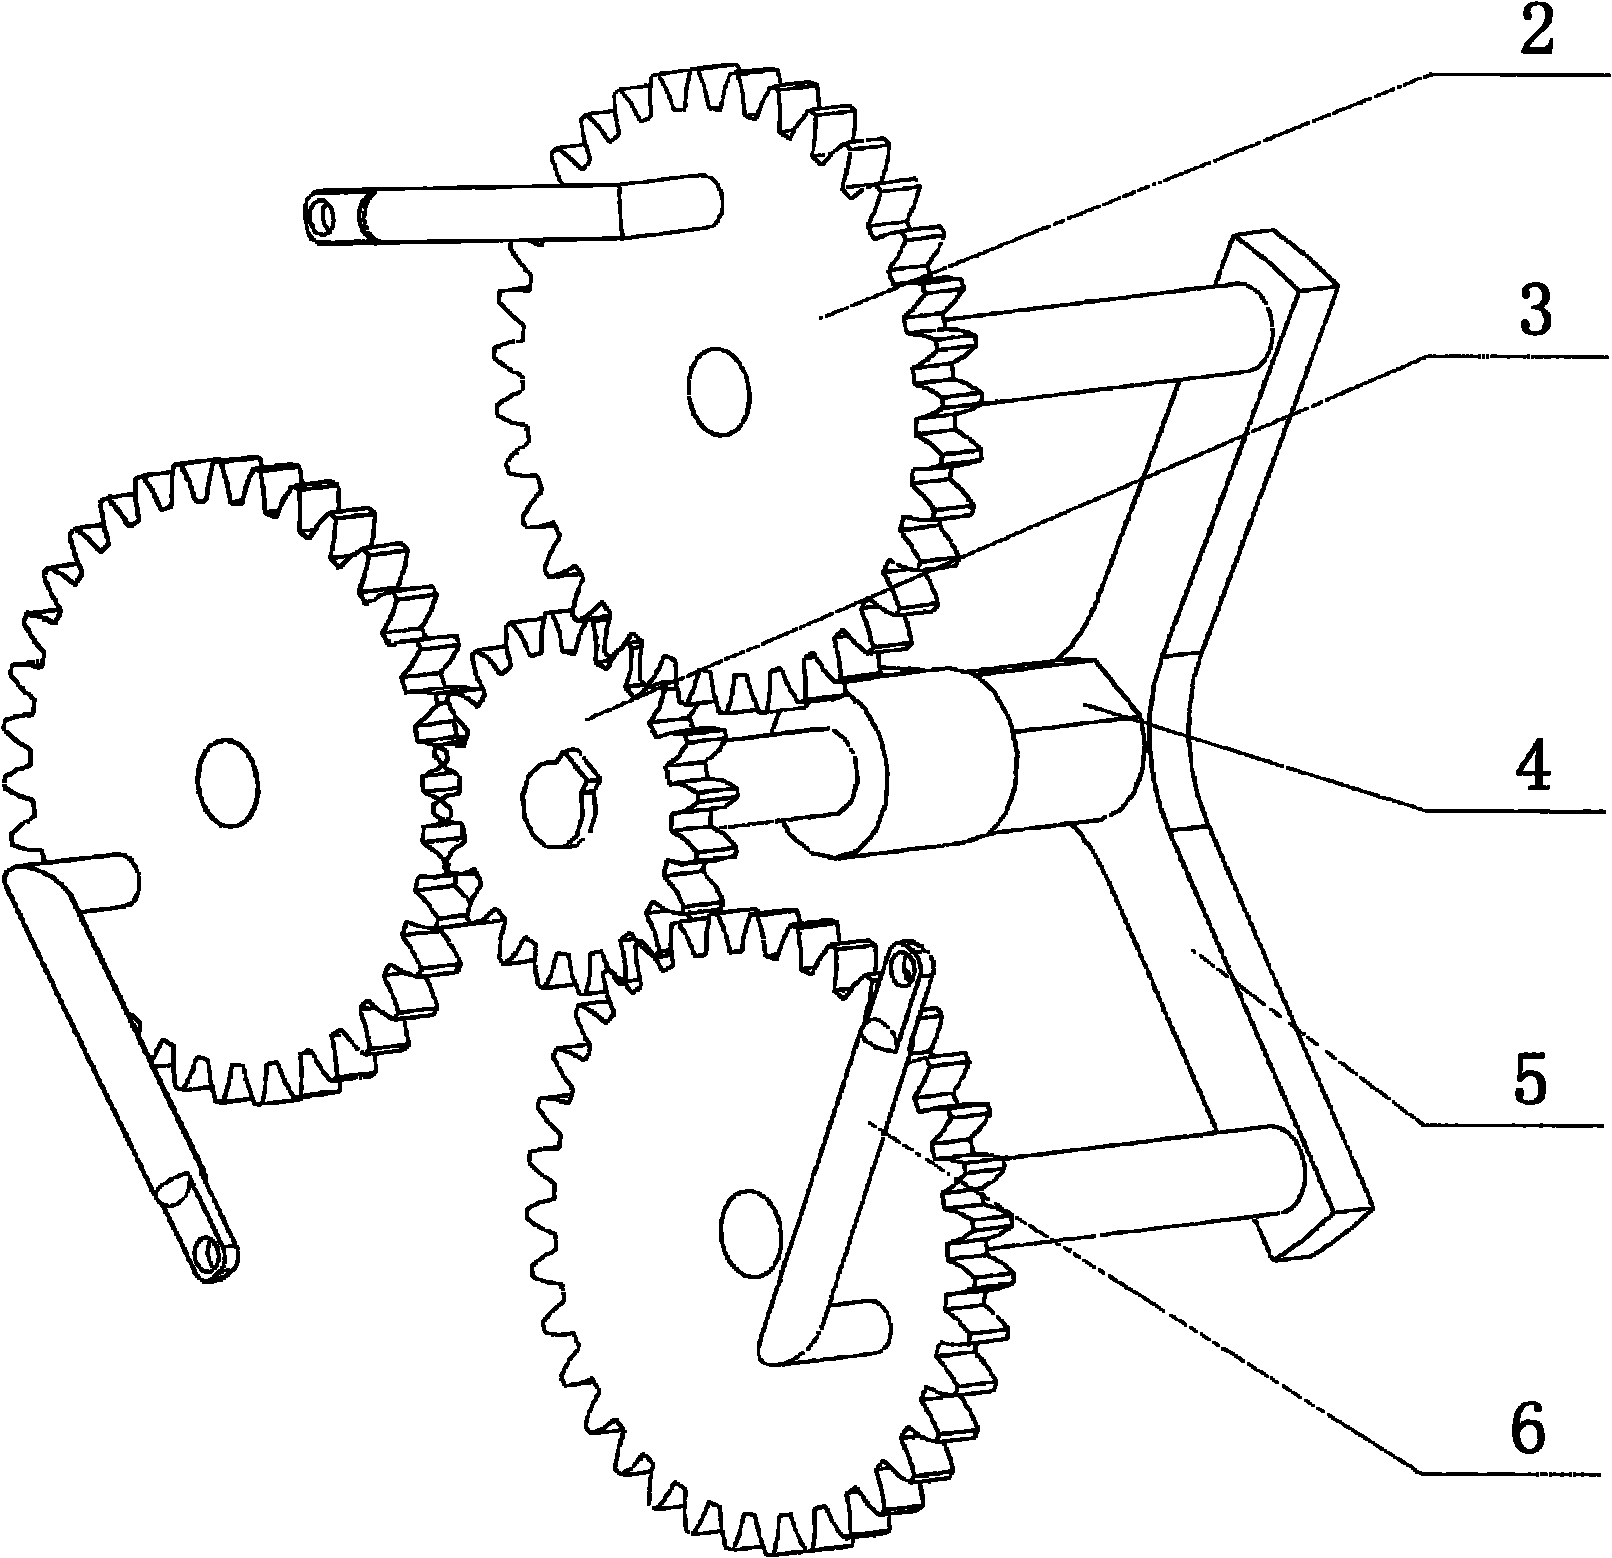 Vehicle wheel with variable wheel diameter